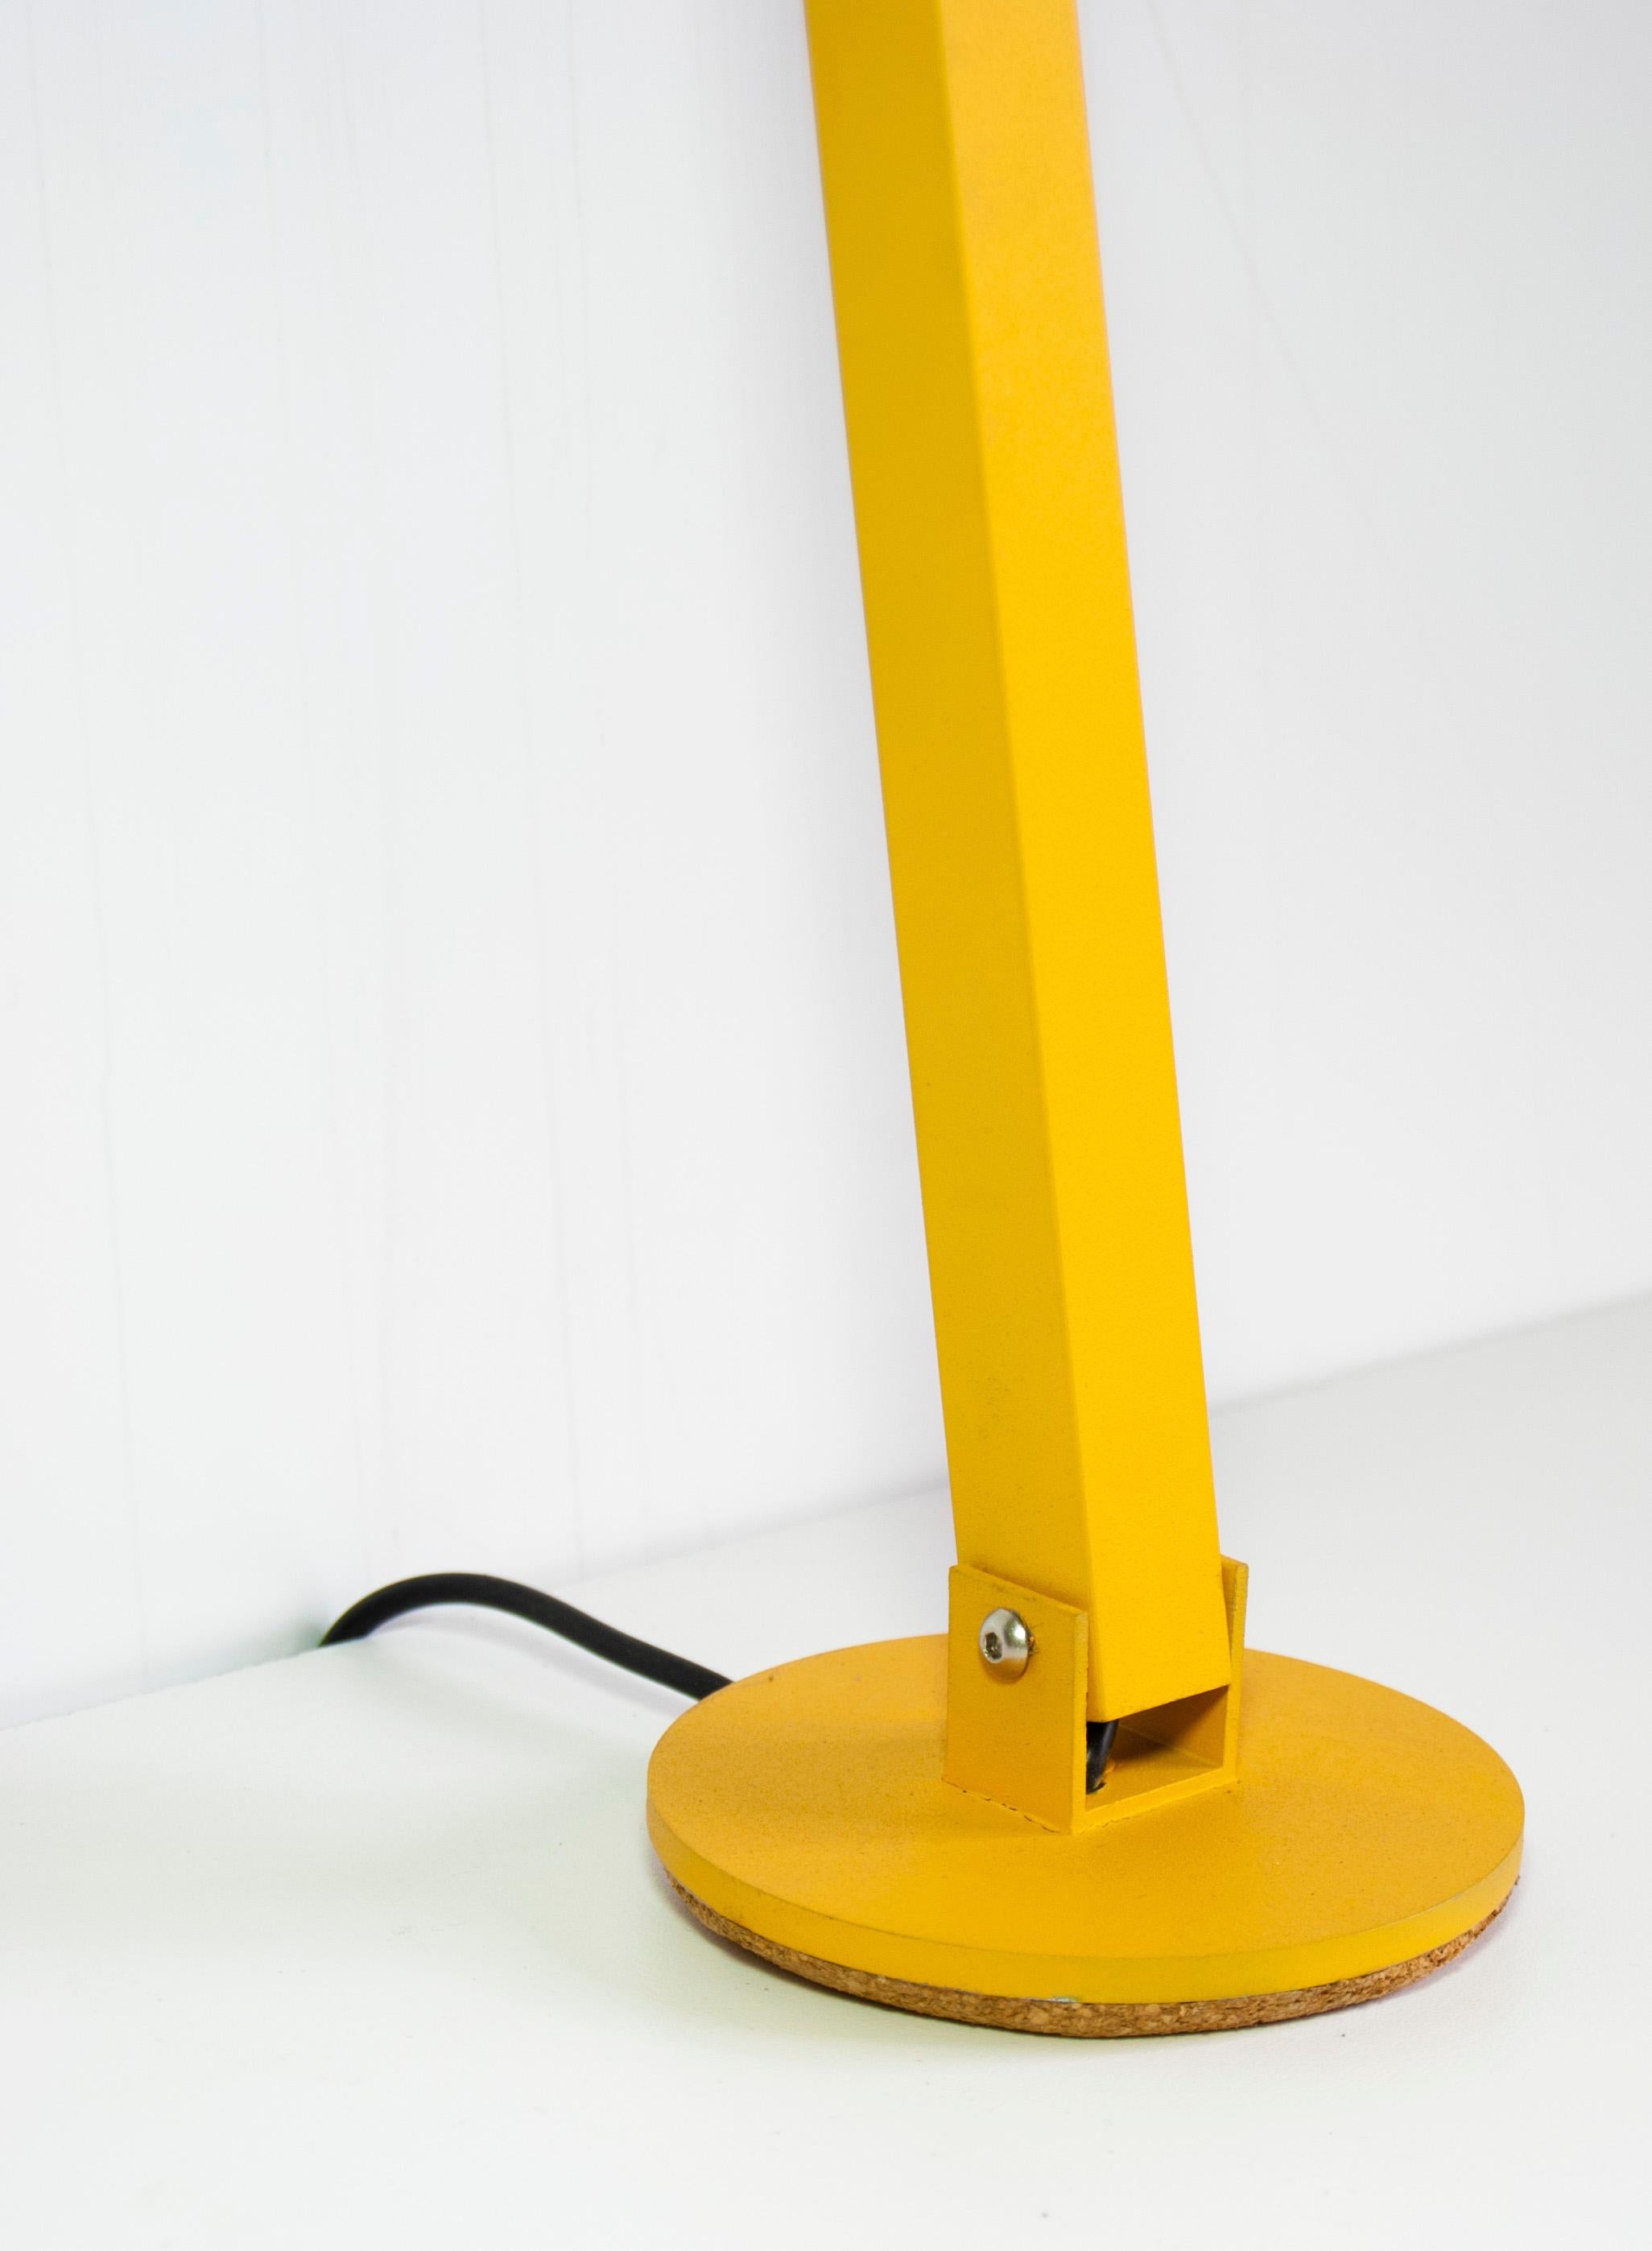 Gica Contra est un lampadaire conçu par Tommaso Cristofaro et dédié à son fils Riccardo, fabriqué en série limitée avec une méthode hautement artisanale.
Pour la réalisation, on utilise des matériaux tels que l'aluminium de 1,5 mm d'épaisseur qui,